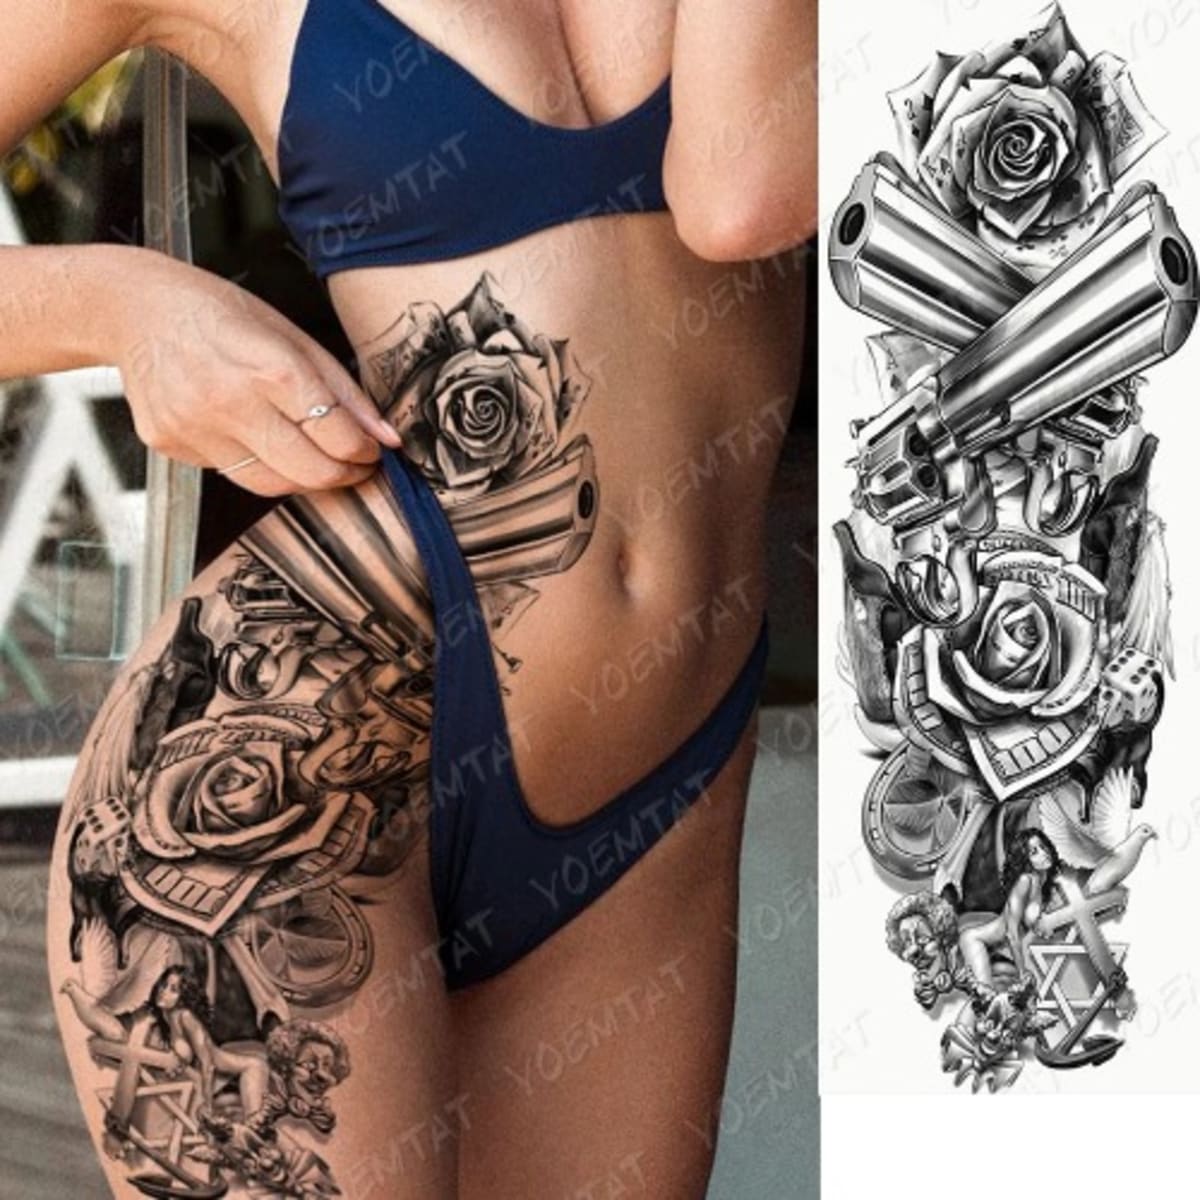 Gun Rose Tattoo Images  Free Download on Freepik